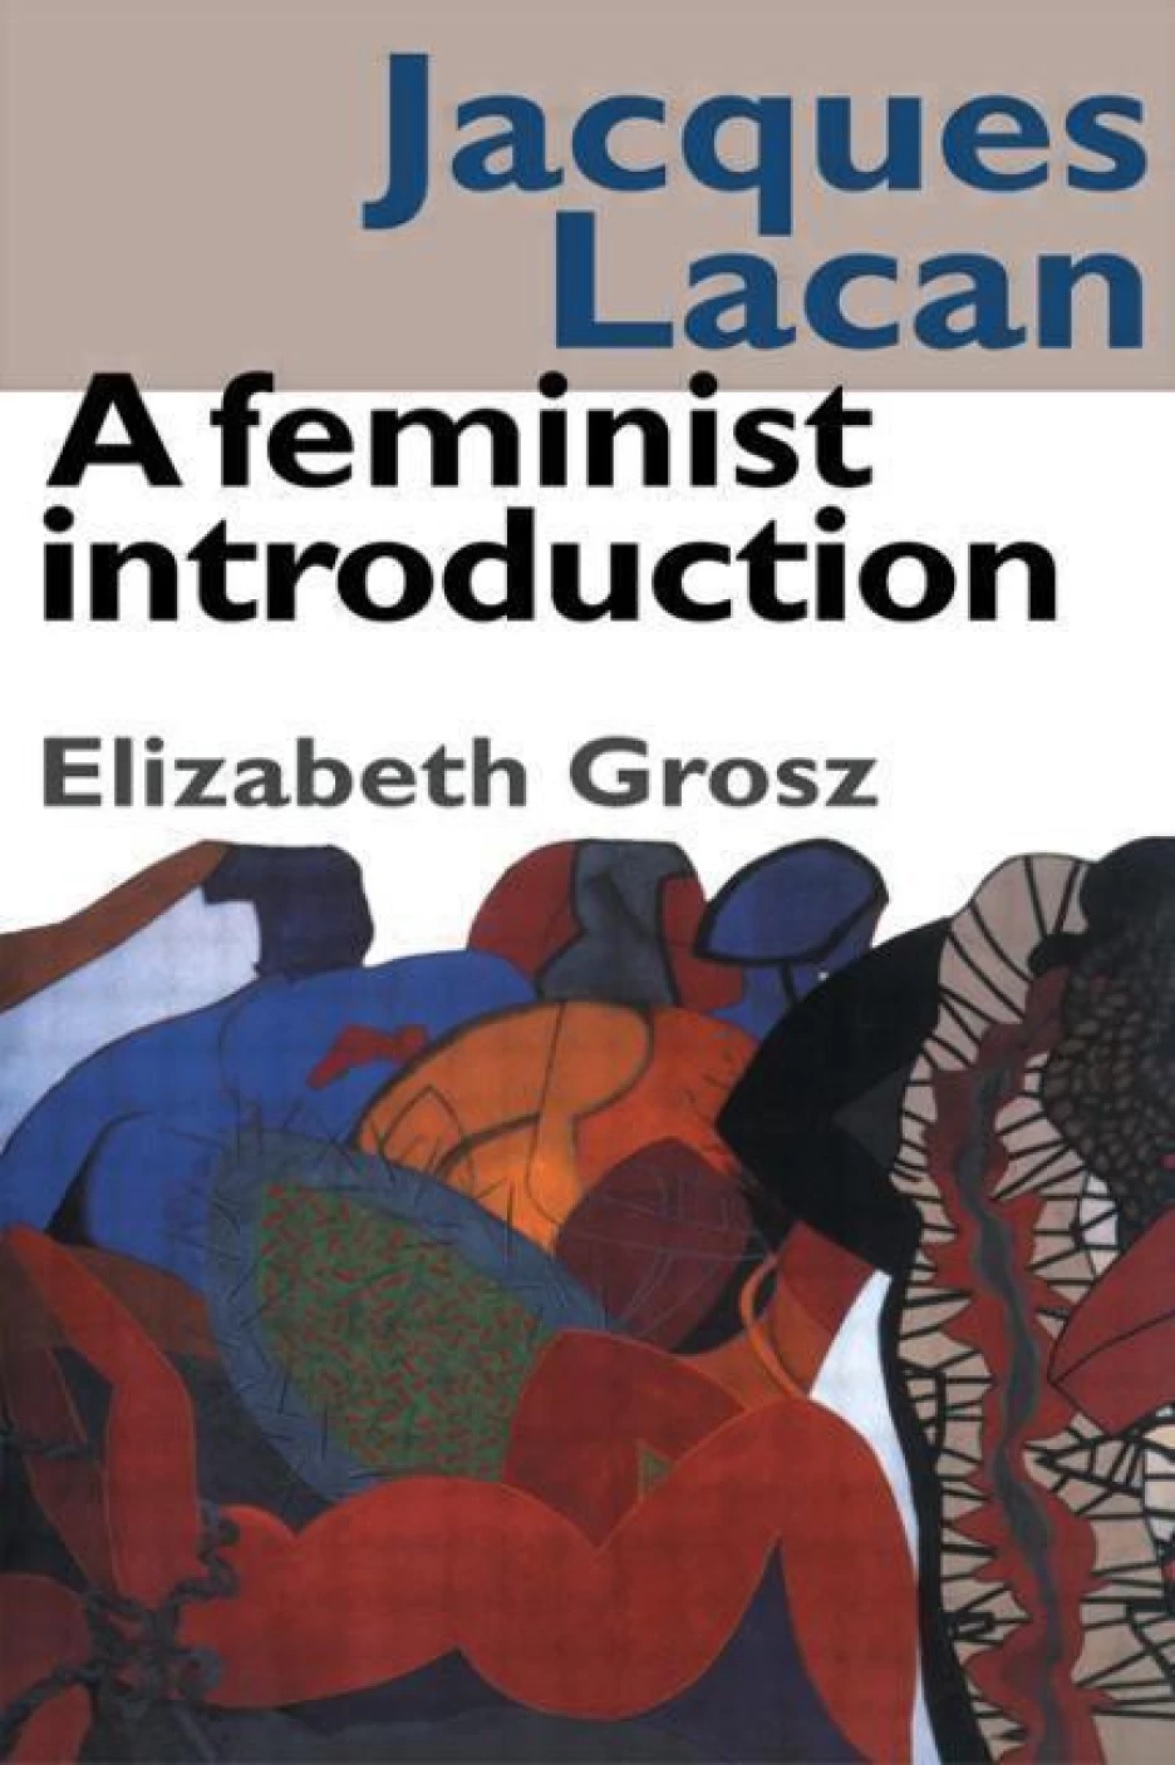 Jacques-lacan-a-feminist-introduction.elizabeth-grosz.jpg